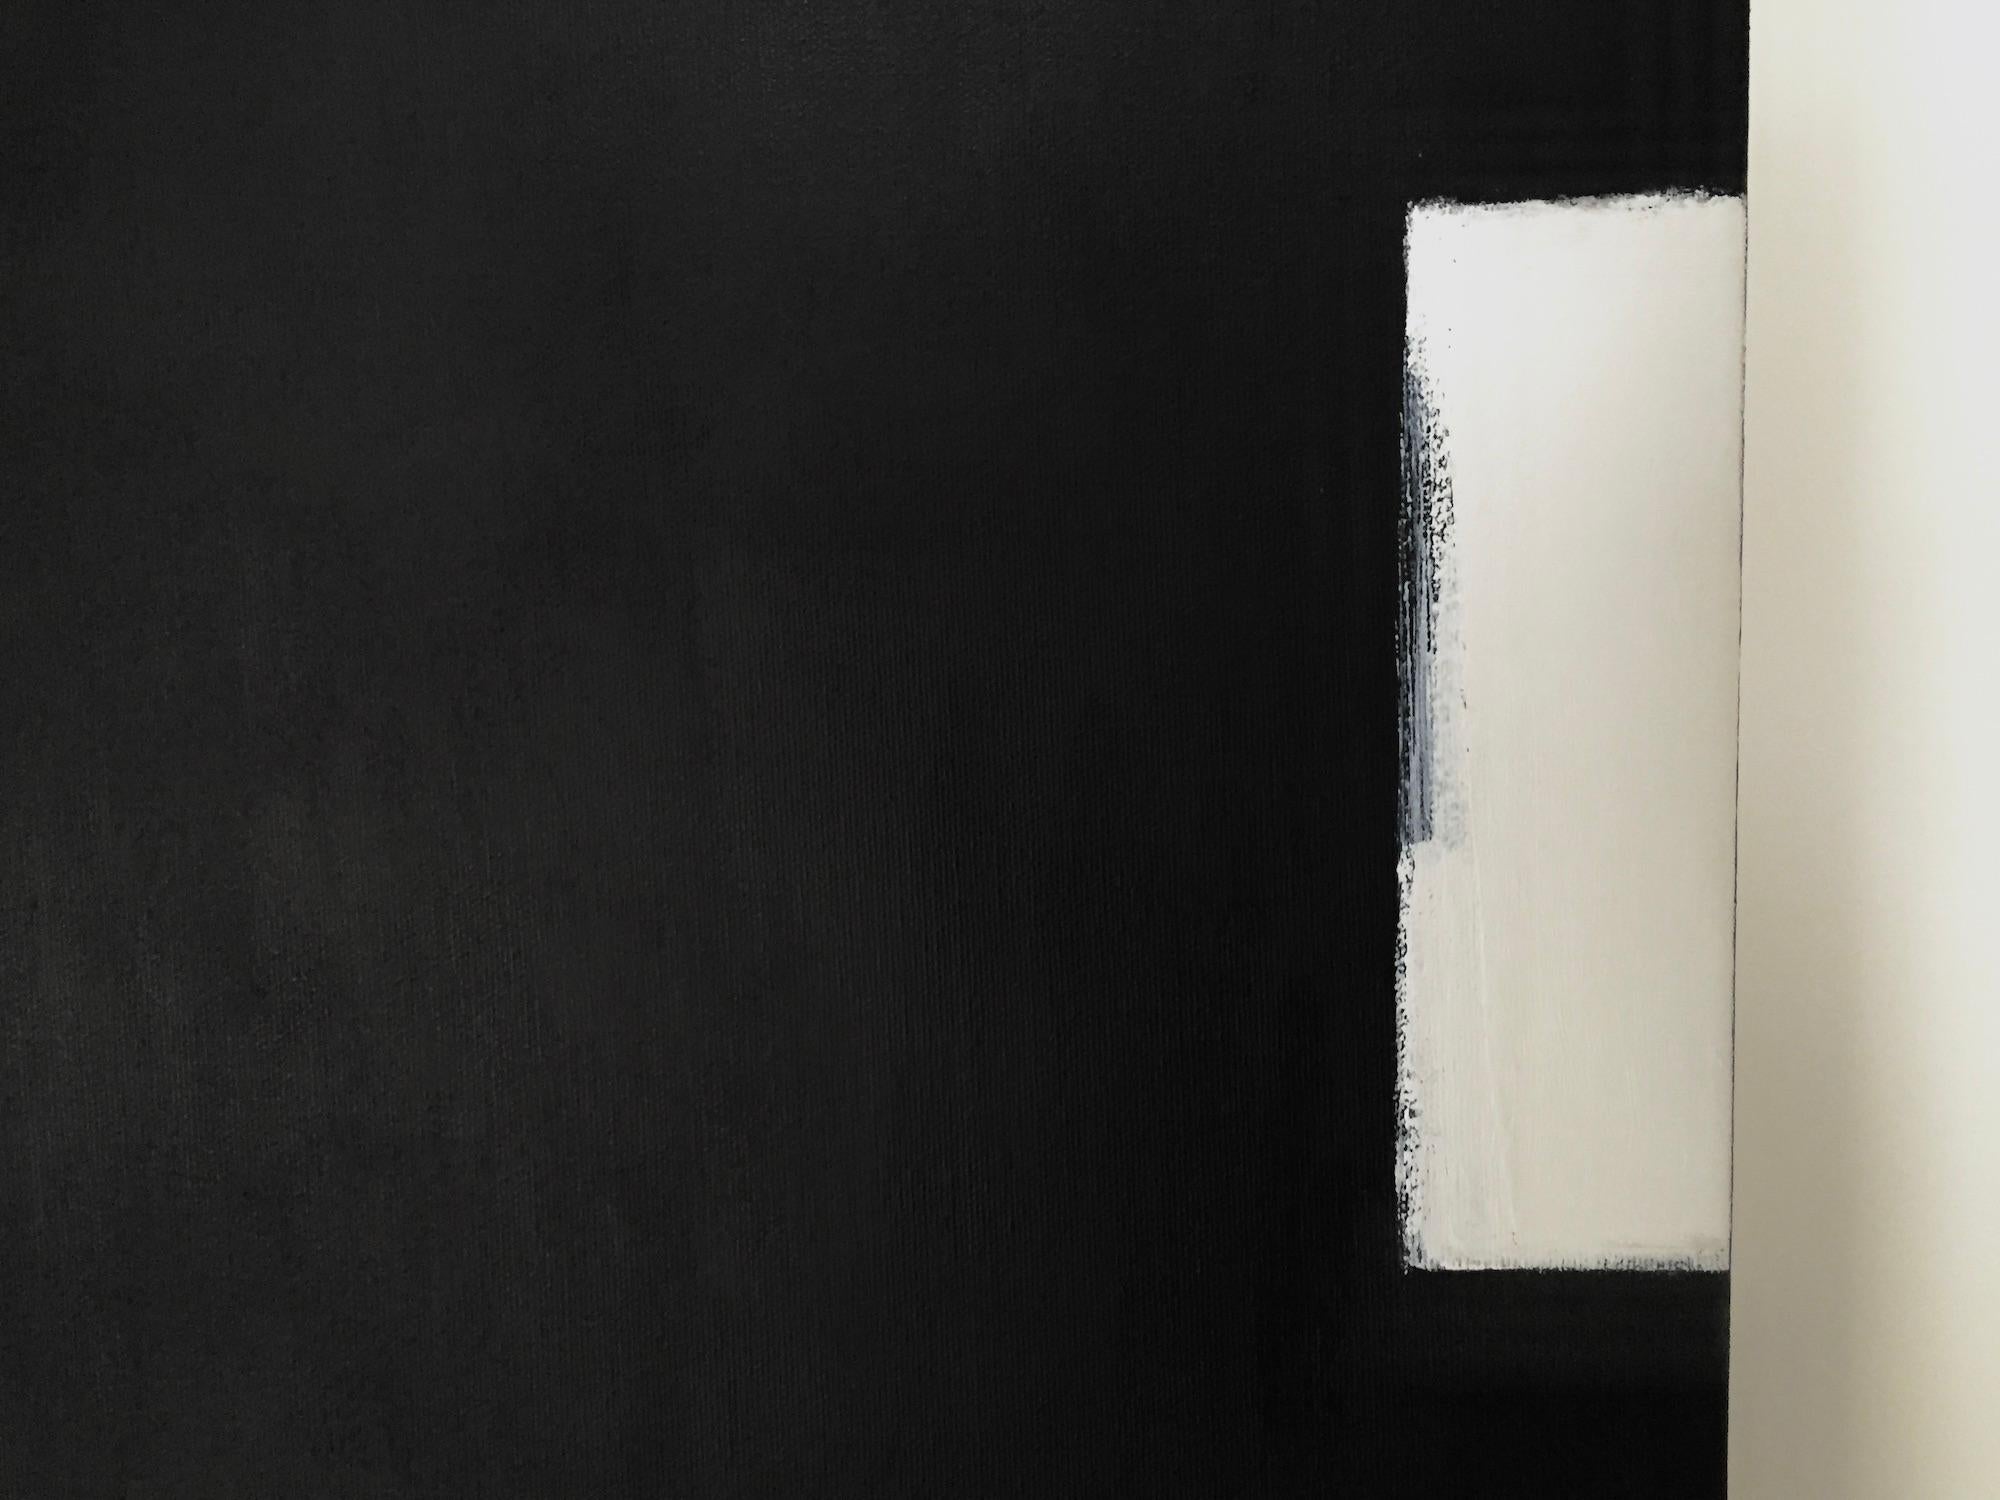 Zeitgenössische abstrakte Malerei. Die Schwarz-Weiß-Farbpalette und die minimale Komposition betonen die Kraft der Einfachheit und Zurückhaltung. Das ästhetisch ruhige Gemälde lädt den Betrachter ein, eine unmittelbare, rein visuelle Reaktion zu